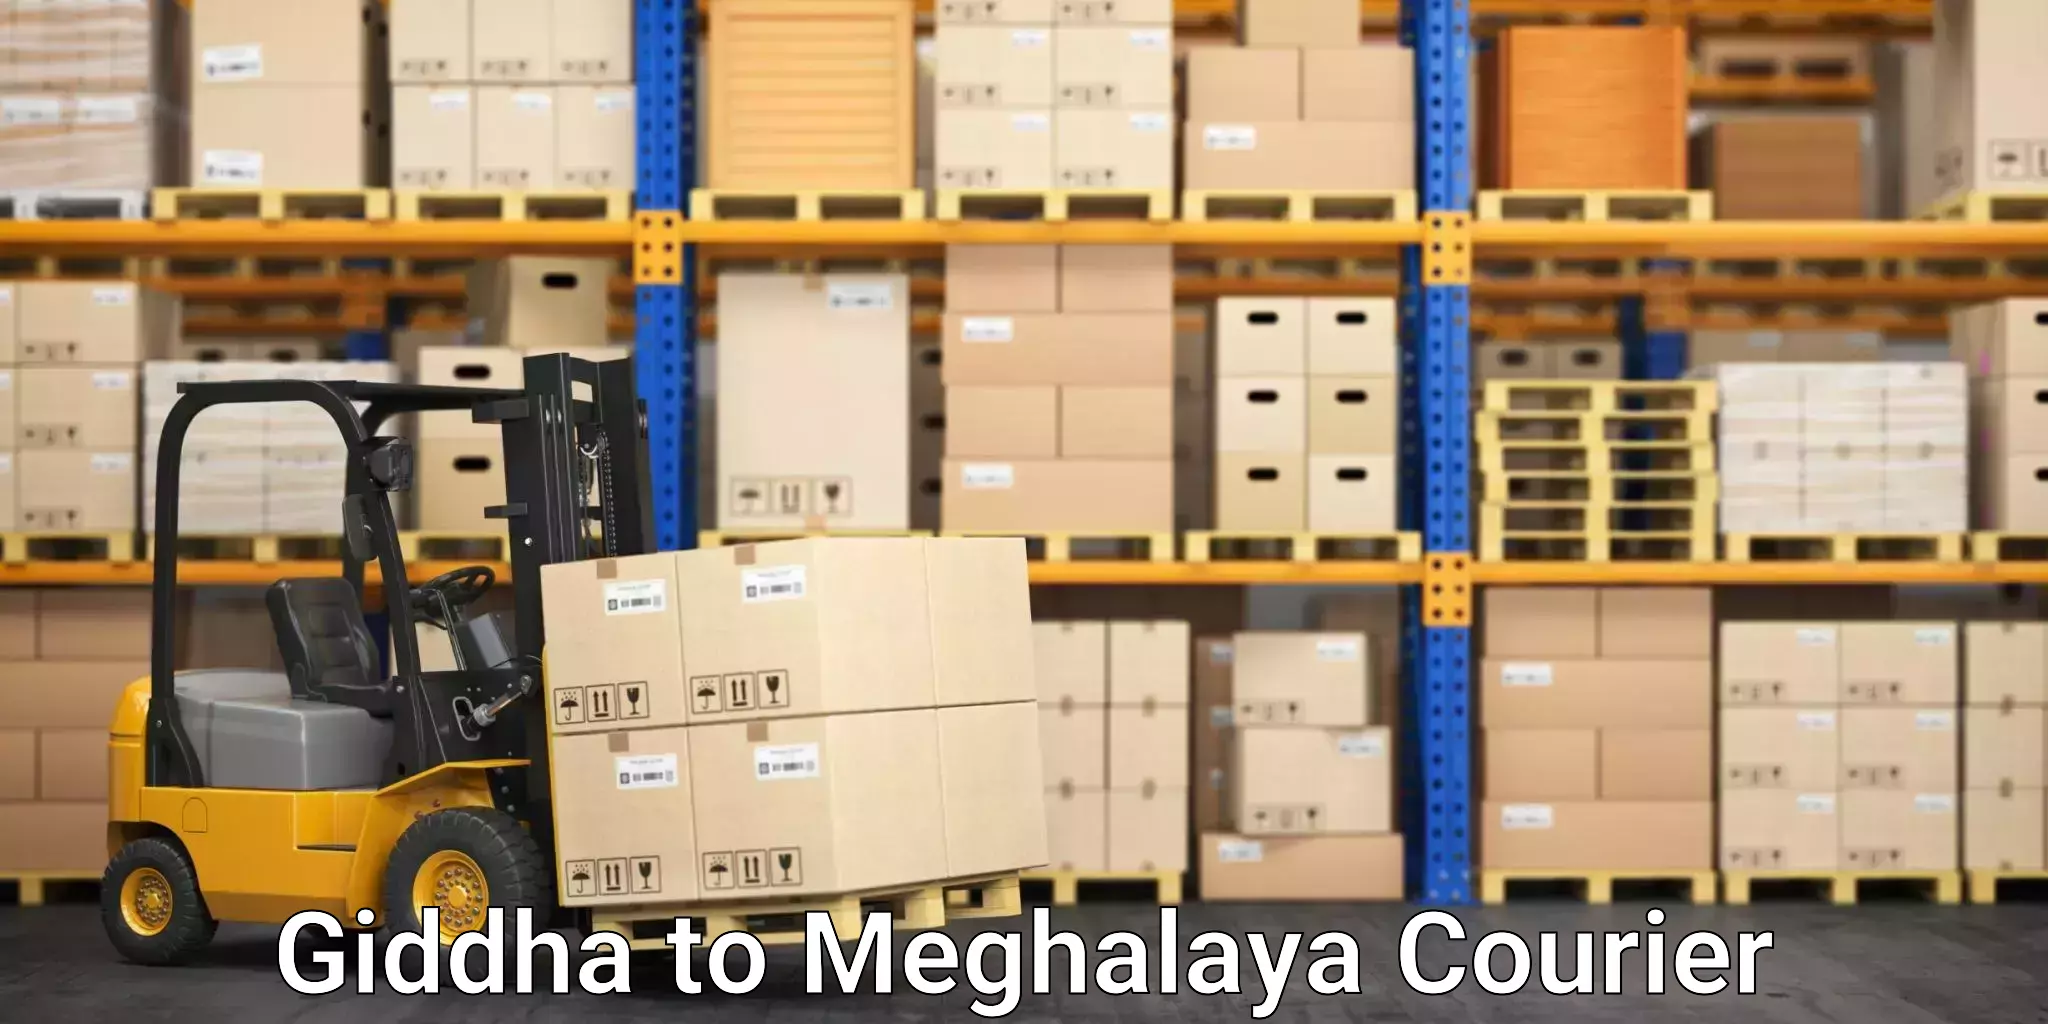 Stress-free furniture moving Giddha to NIT Meghalaya